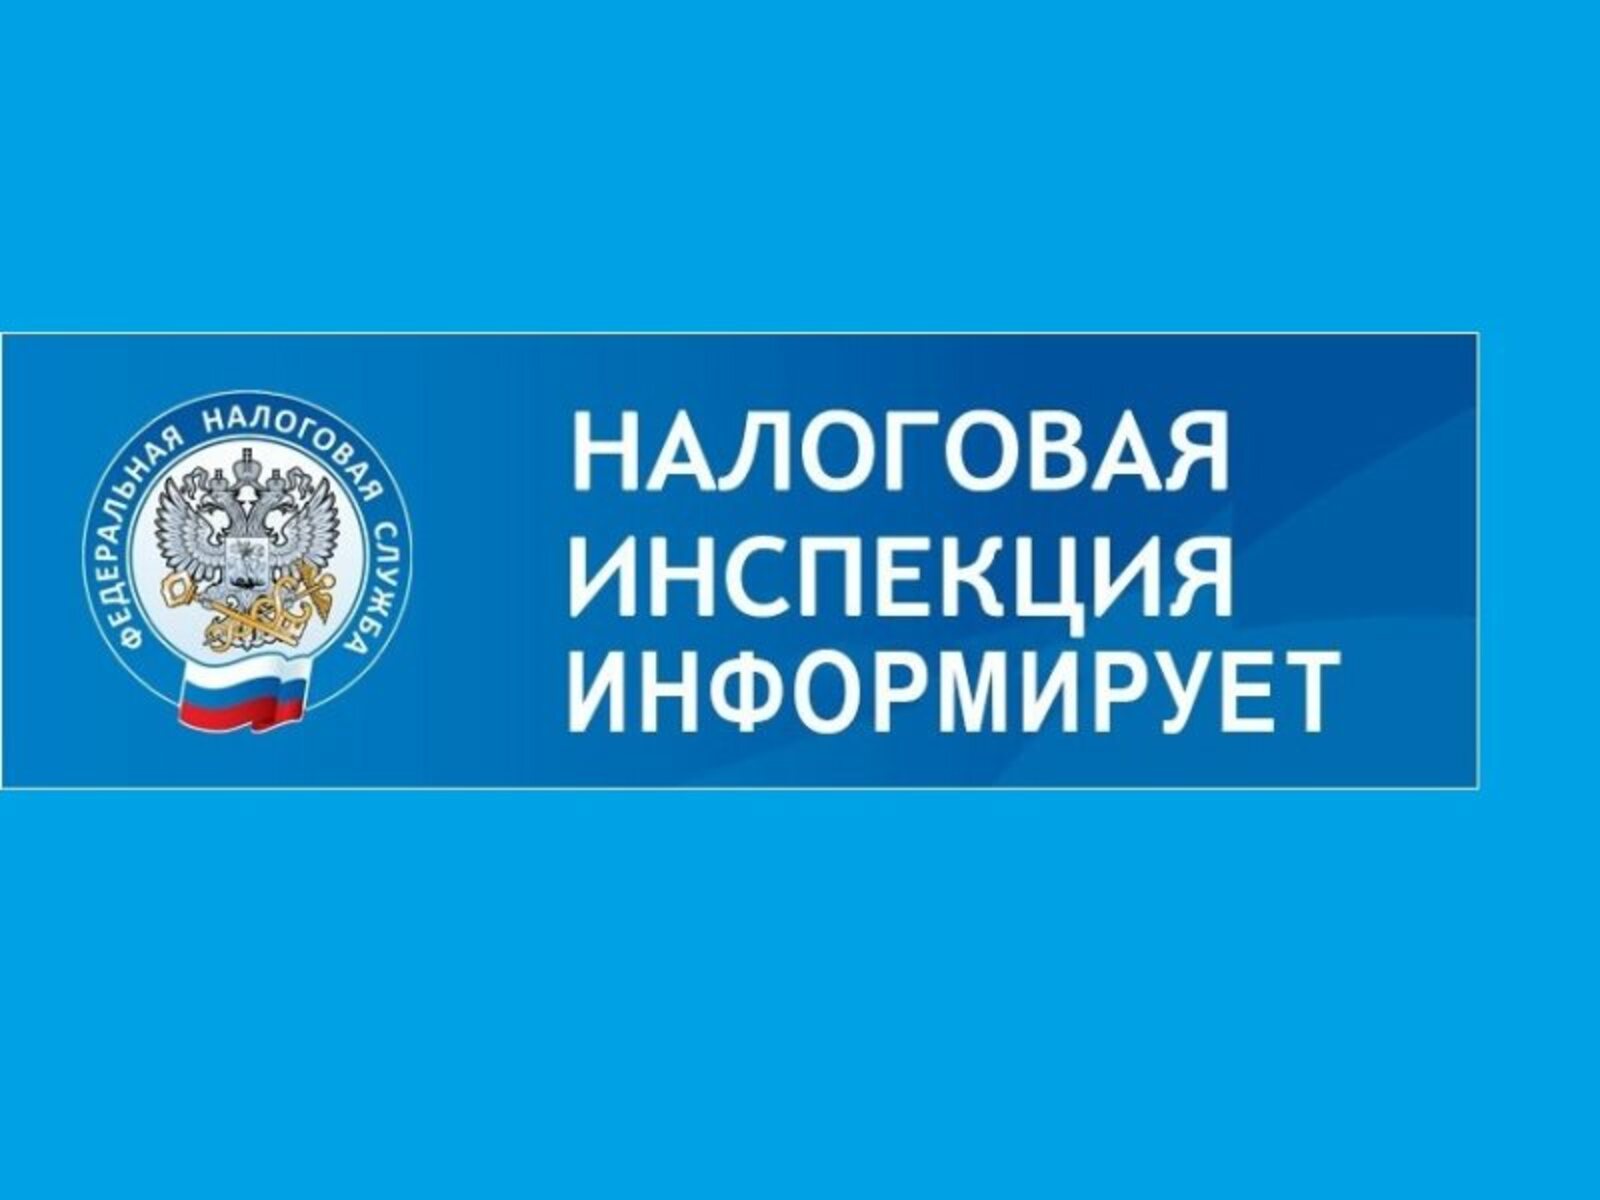 Управление ФНС России по Алтайскому краю проводит серию апрельских бесплатных вебинаров.